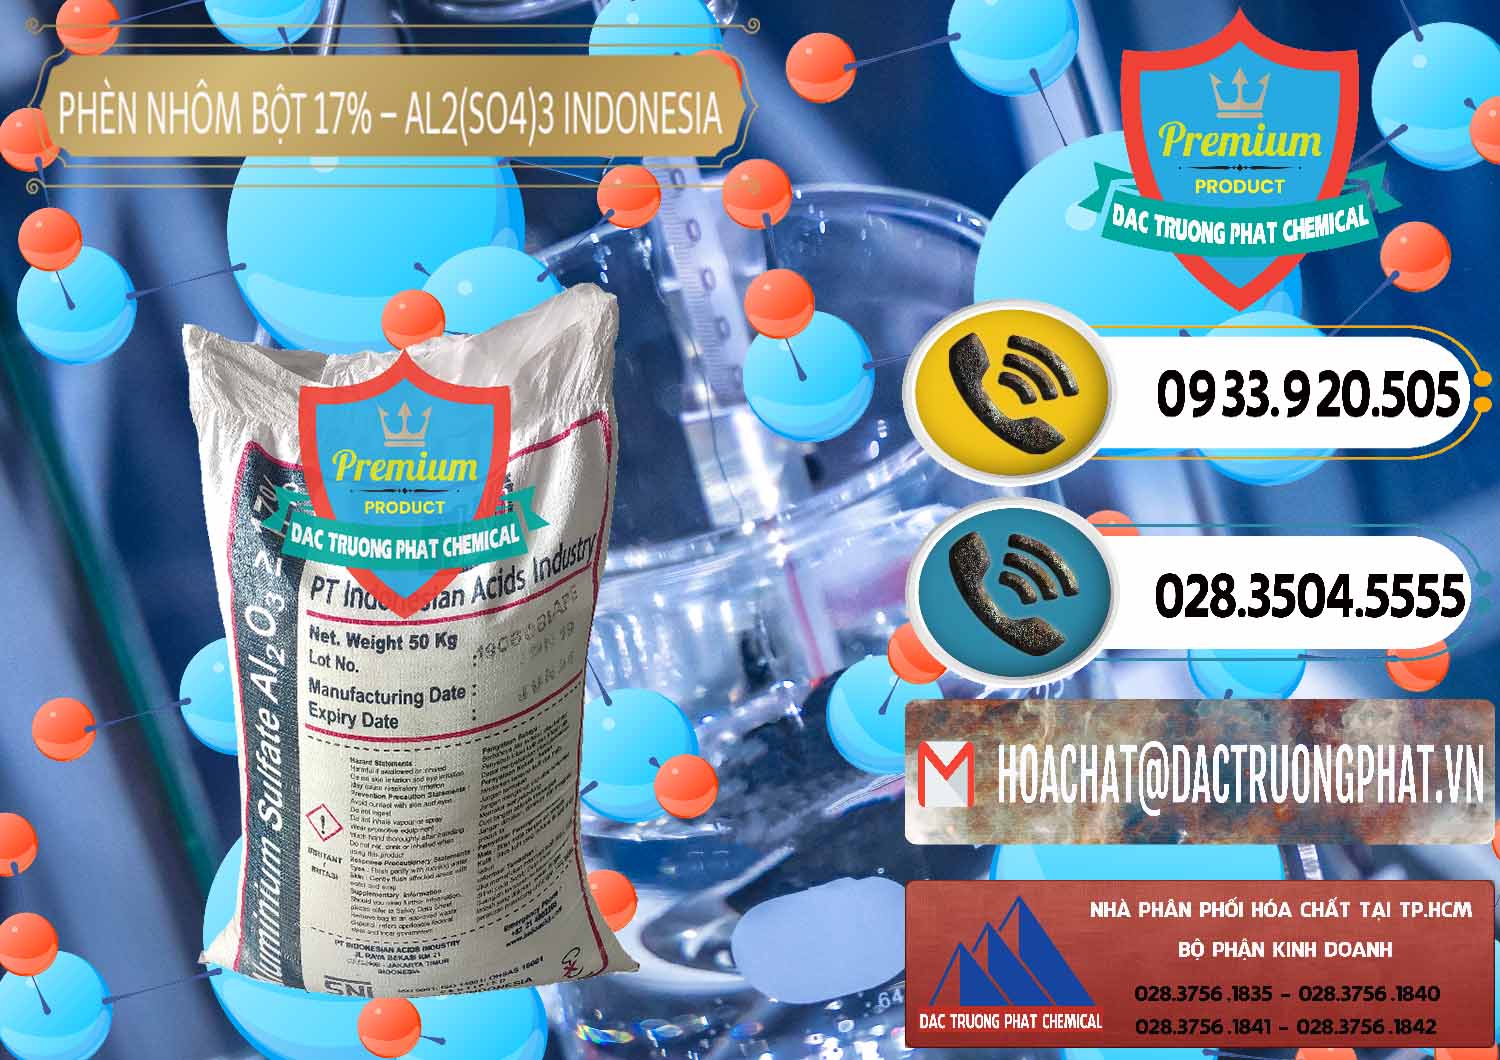 Công ty chuyên phân phối _ bán Phèn Nhôm Bột - Al2(SO4)3 17% bao 50kg Indonesia - 0112 - Cty kinh doanh và cung cấp hóa chất tại TP.HCM - hoachatdetnhuom.vn